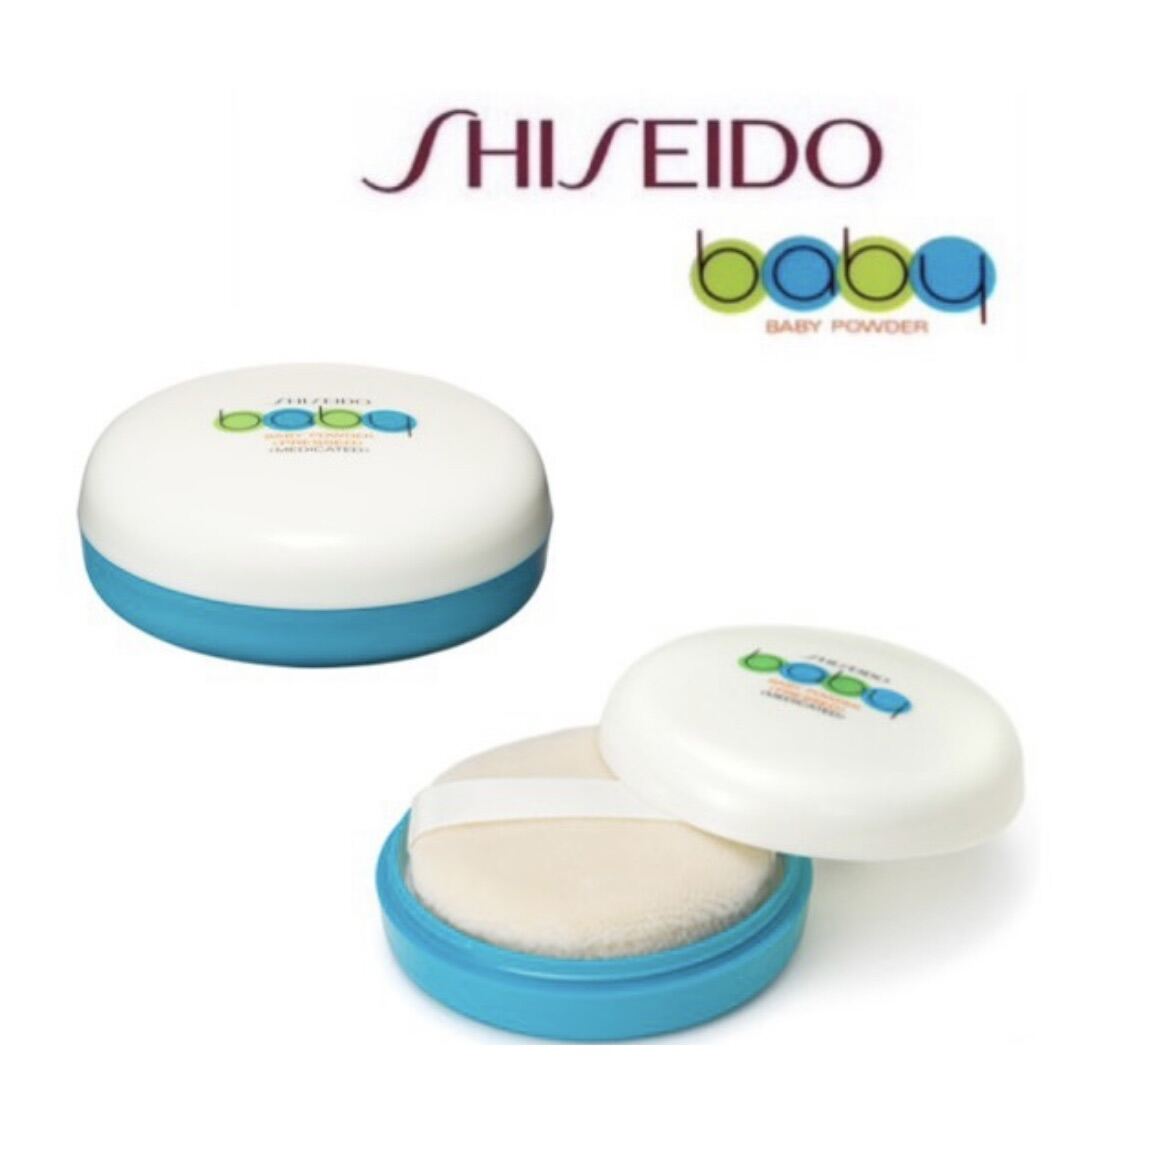 Phấn rôm Medicated Baby Powder Pressed Shiseido nội địa Nhật Bản, 50g